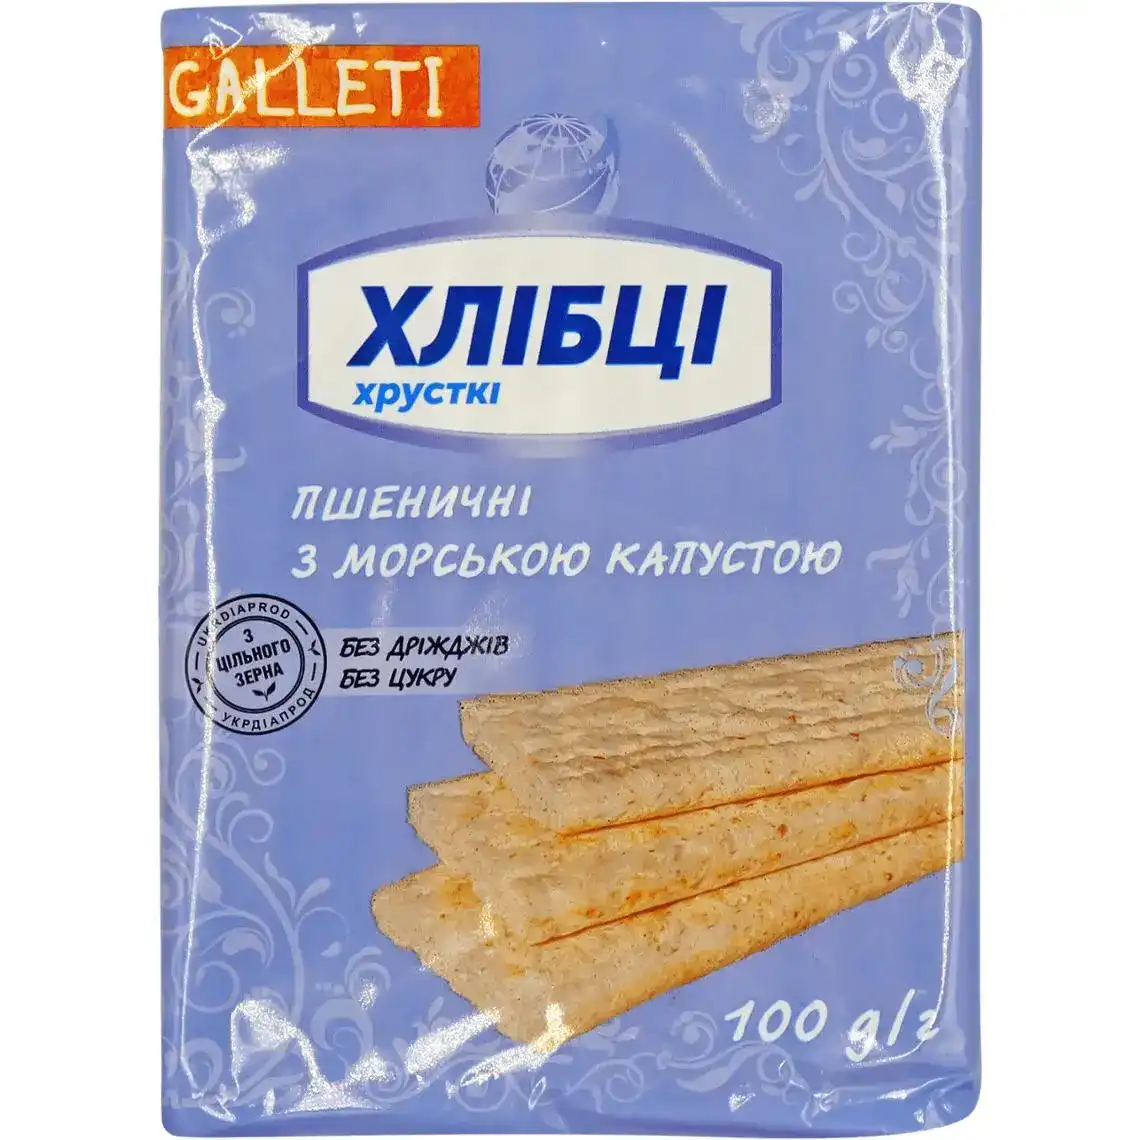 Хлібці Galleti Луганці з морською капустою хрусткі 100 г